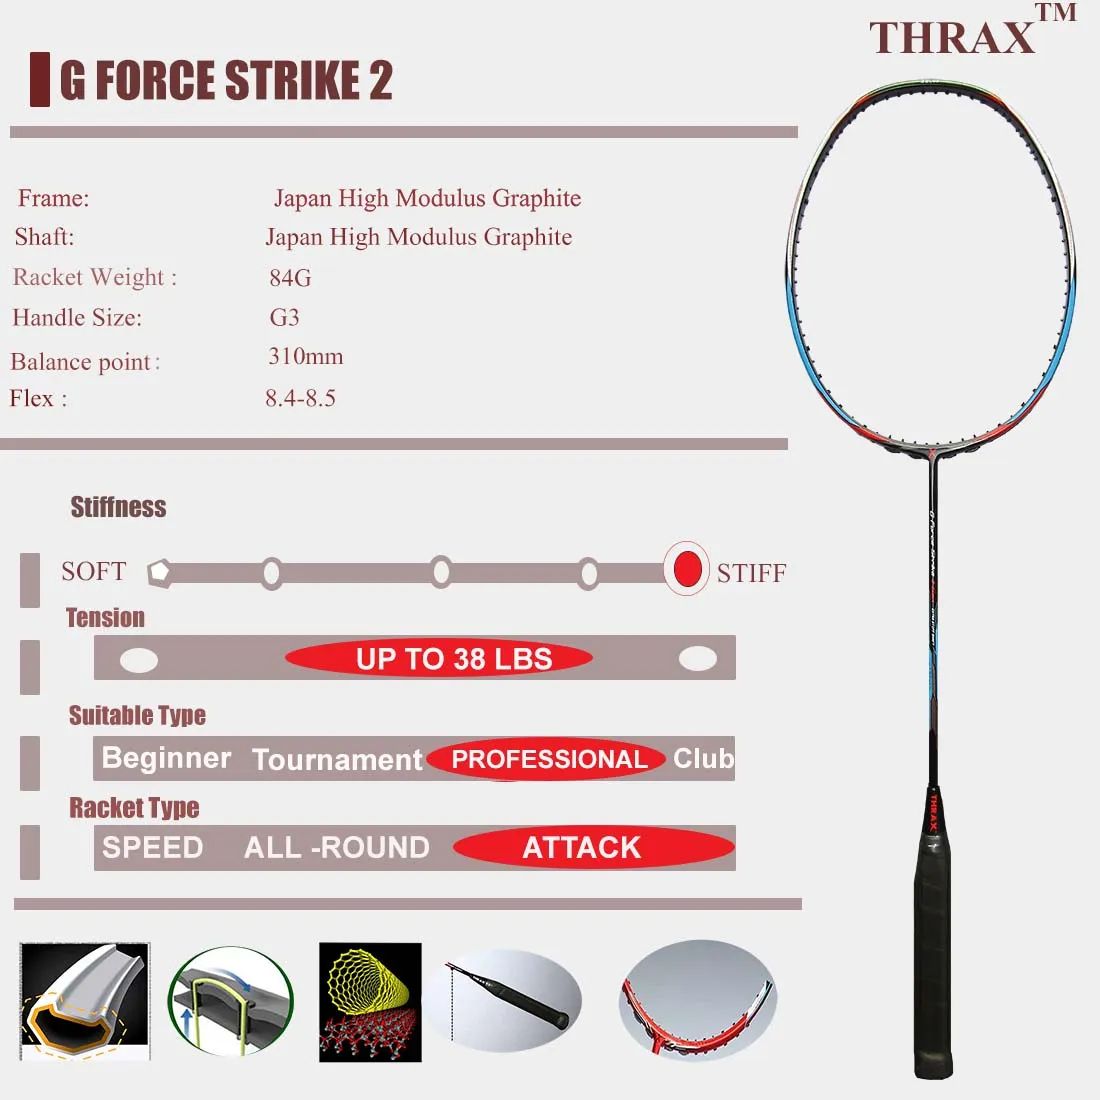 Thrax_G_Force_Strike_II_Gen_Badminton_Racket_Specification_A